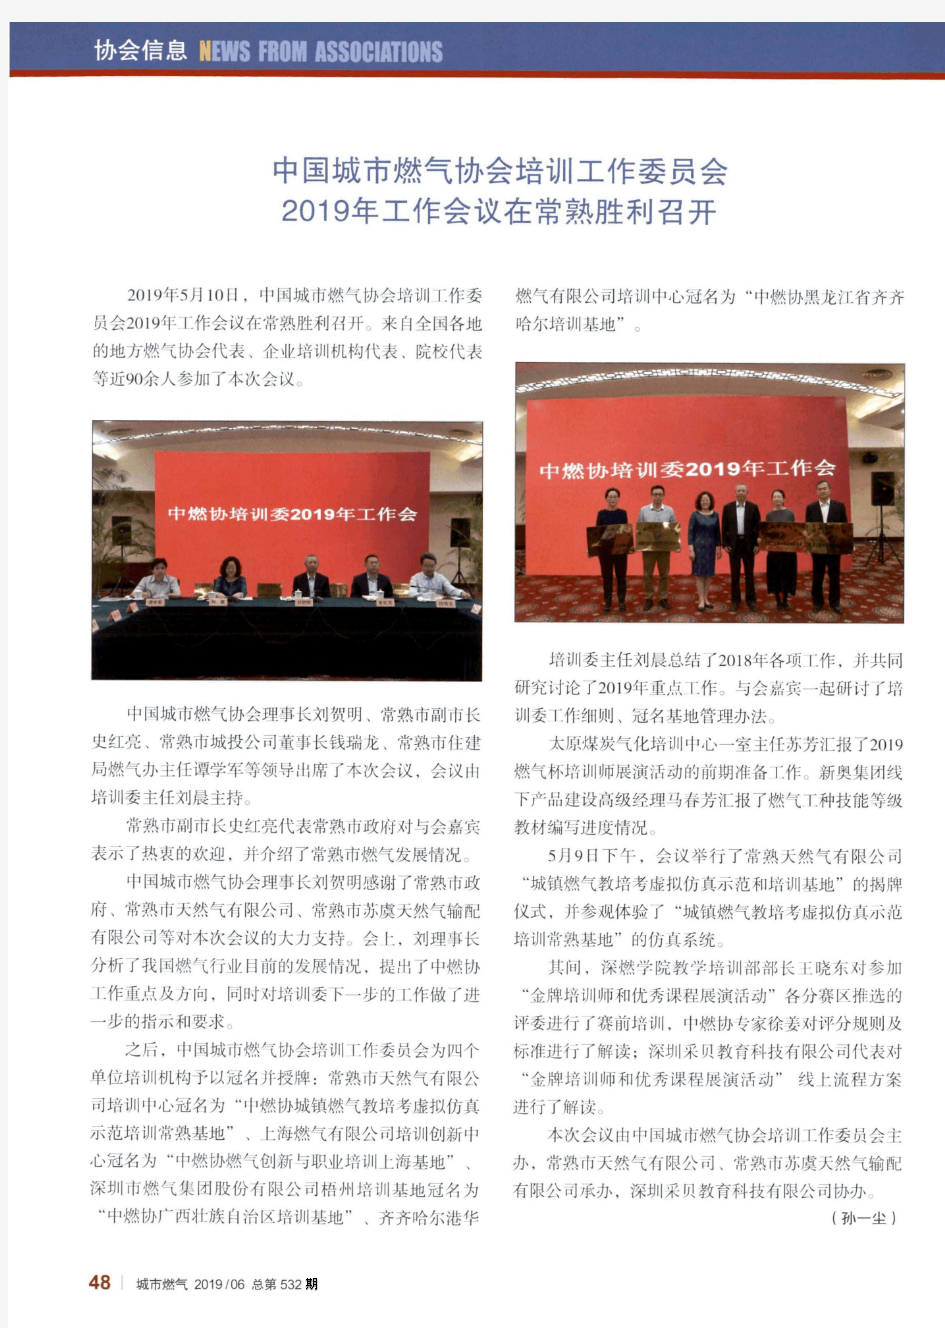 中国城市燃气协会培训工作委员会2019年工作会议在常熟胜利召开